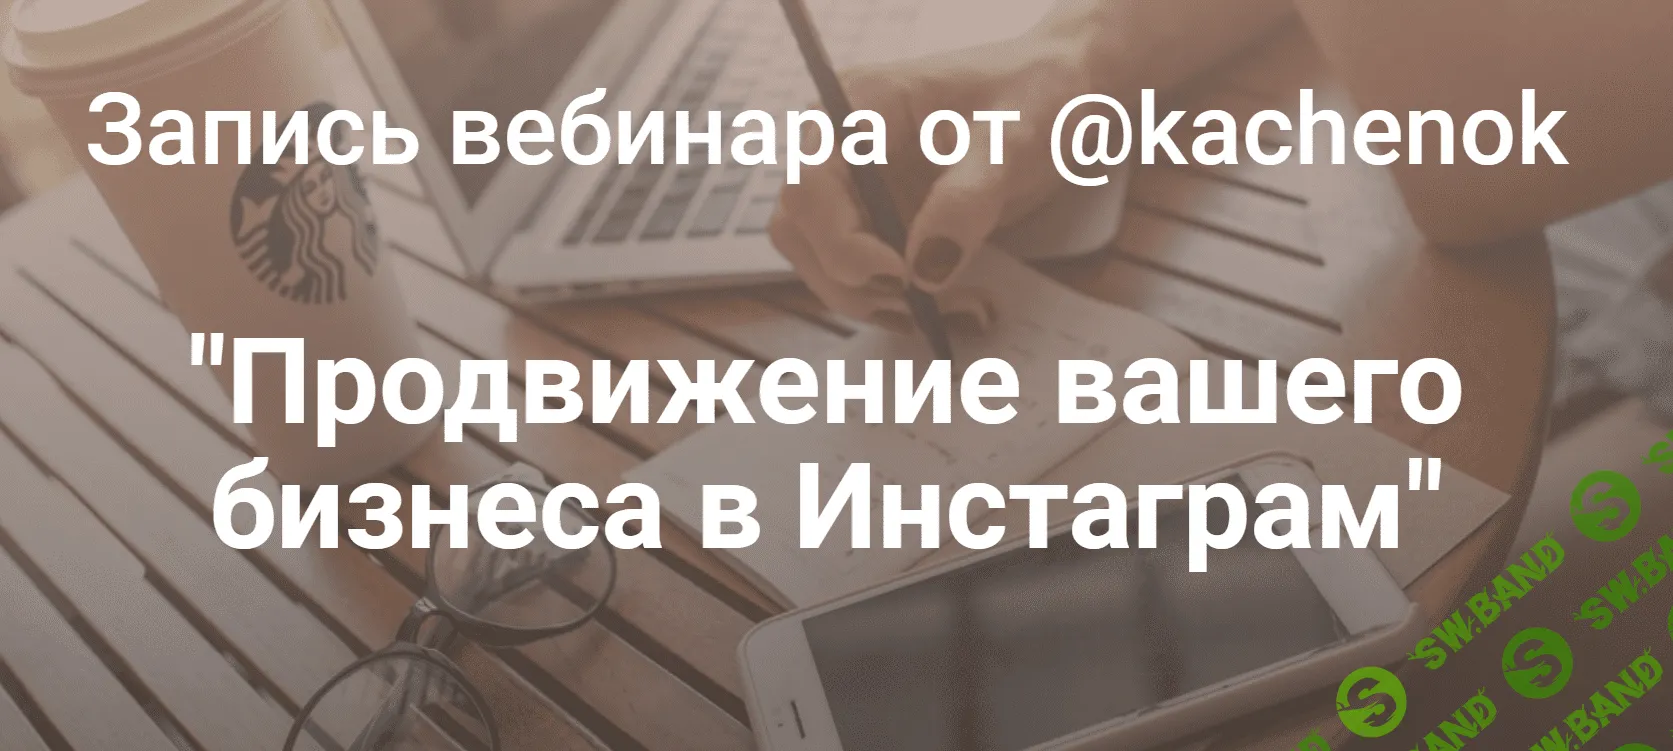 [Kachenok] Продвижение вашего бизнеса в Инстаграм (2019)